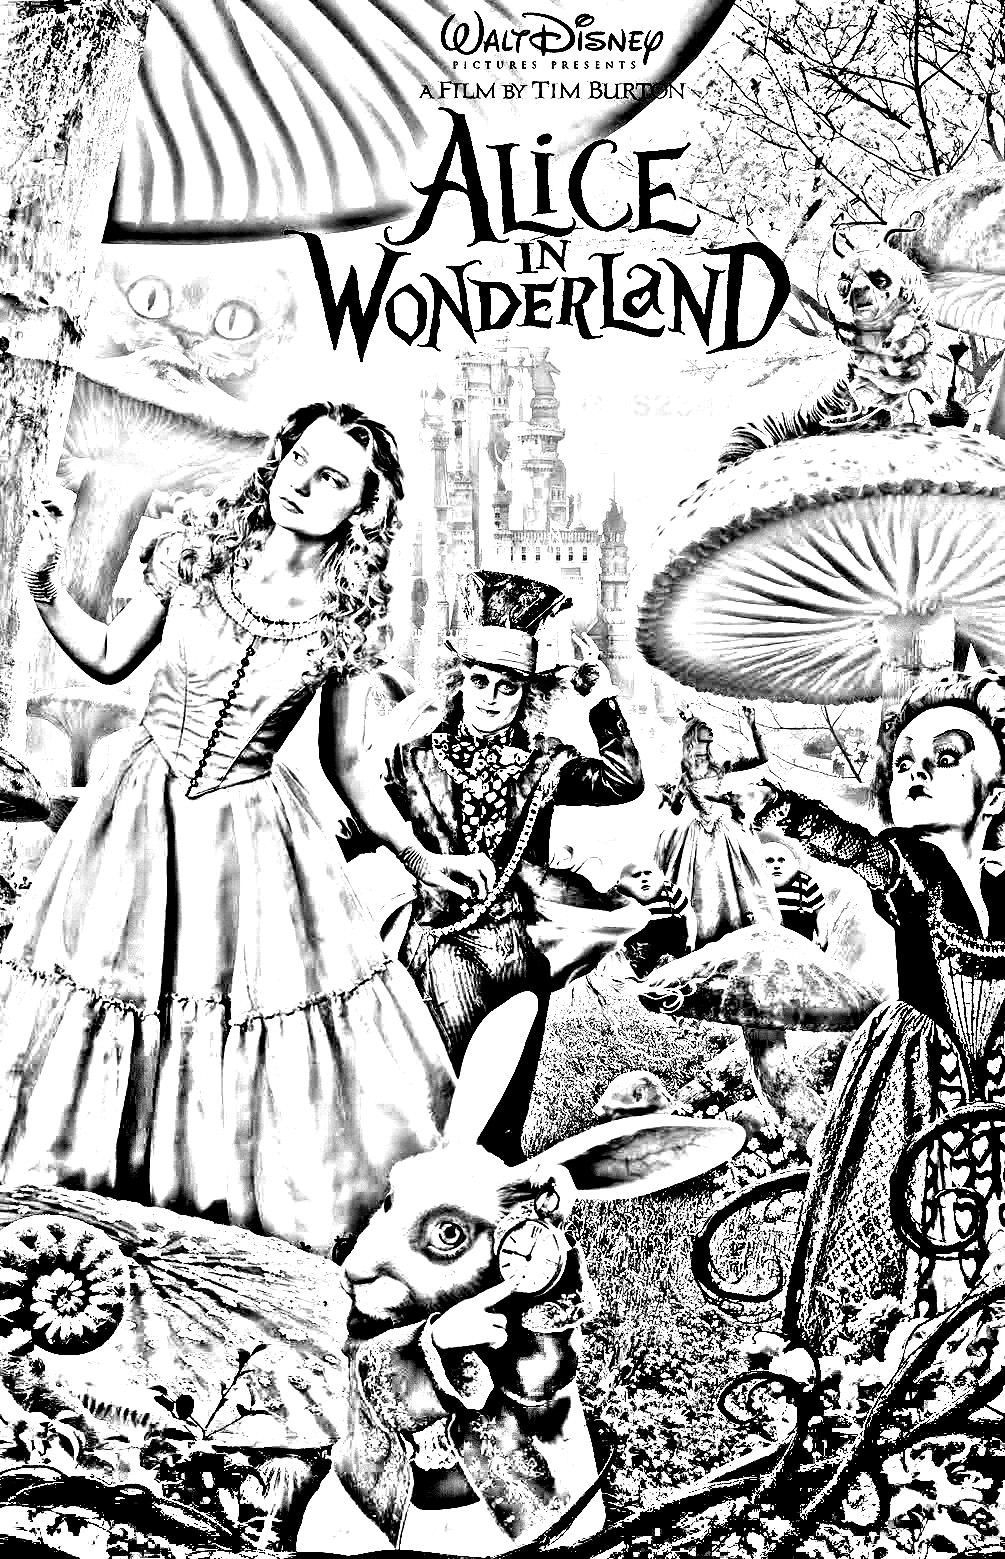 Malvorlage Alice im Wunderland Tim Burton (Disney)Diese Malvorlage ist ideal für Fans des Films, denn sie ermöglicht es, die Abenteuer von Alice und ihren Gefährten nachzuerleben.